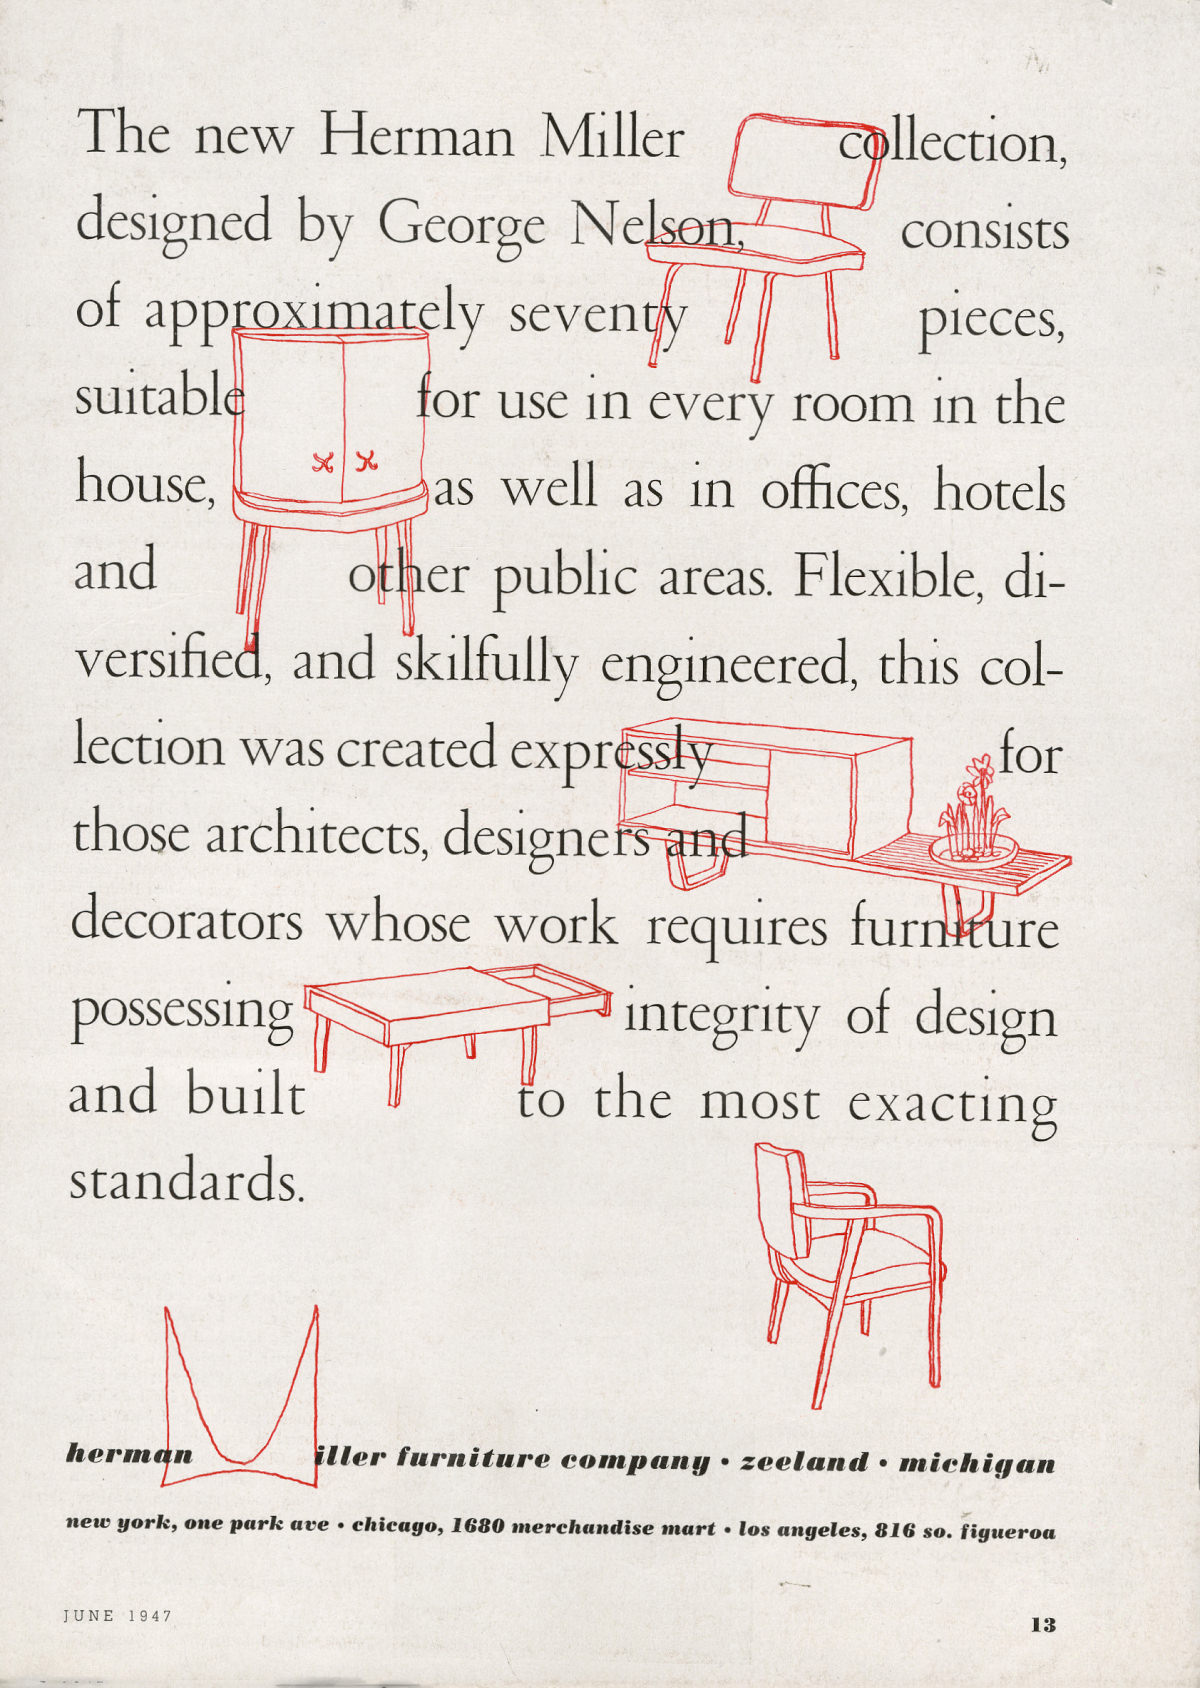 Ilustrações de peças de mobiliário, incluindo itens da série Basic Cabinet, entremeadas a um texto promocional que descreve a primeira coleção de George Nelson para a Herman Miller.